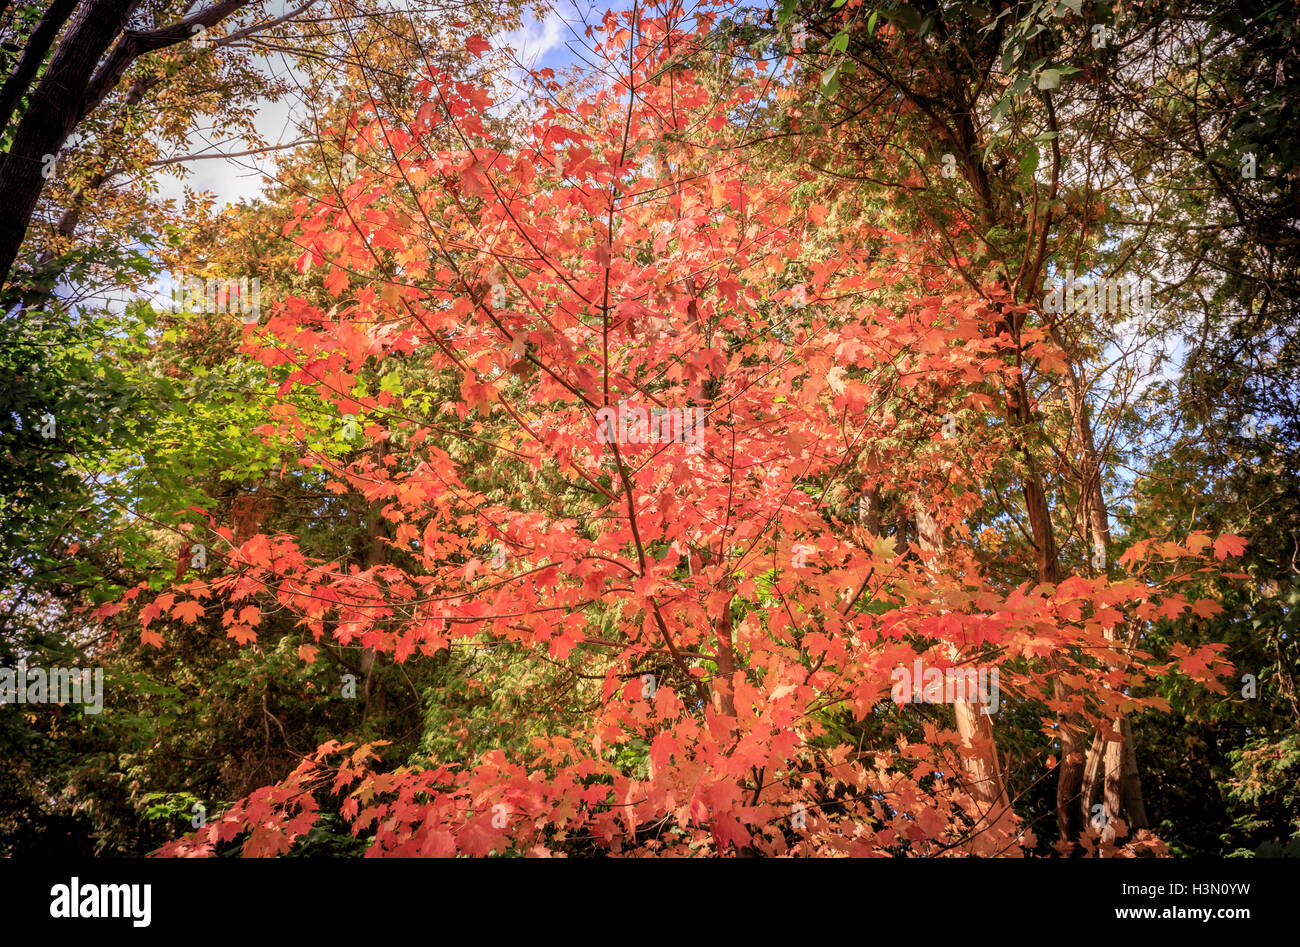 L'orange vif des feuilles sur un arbre en automne, Ontario Canada Banque D'Images